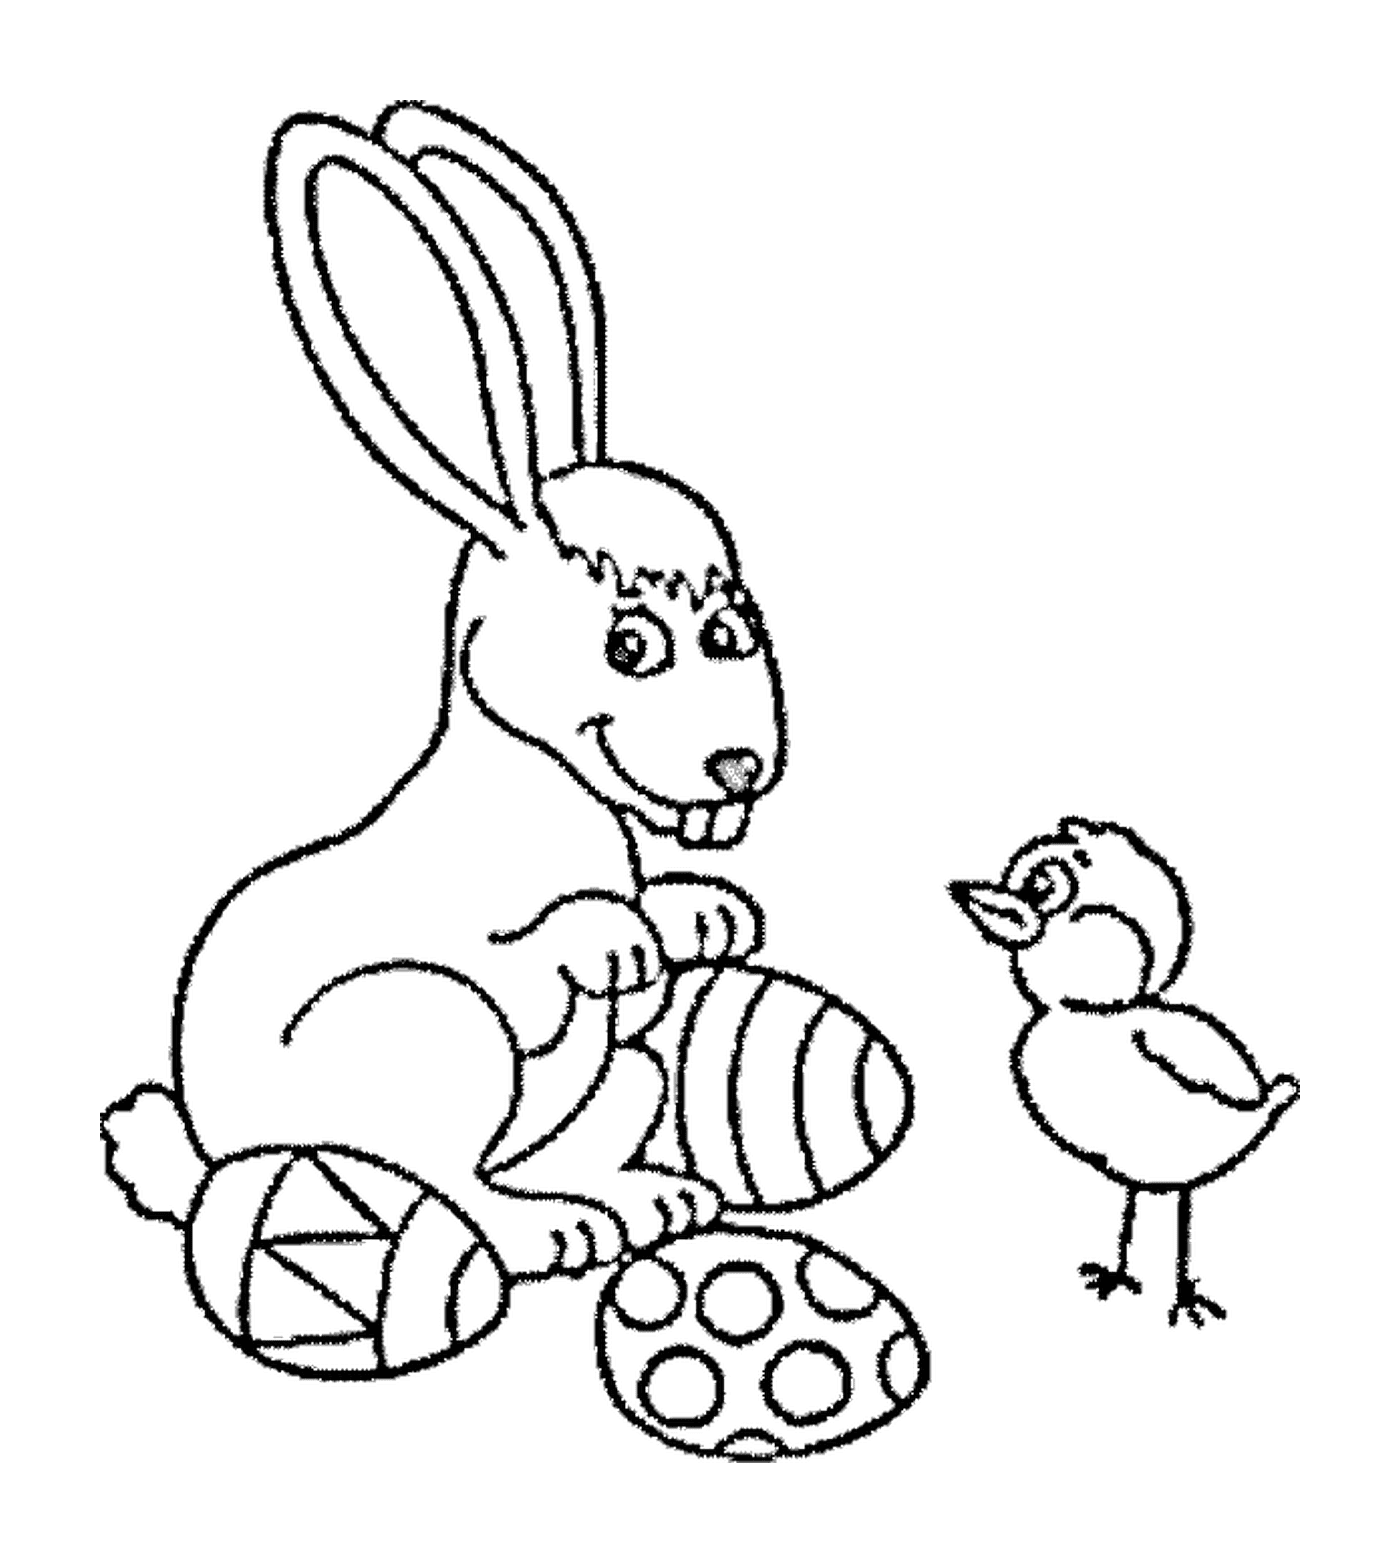  兔子和鸟类公司 